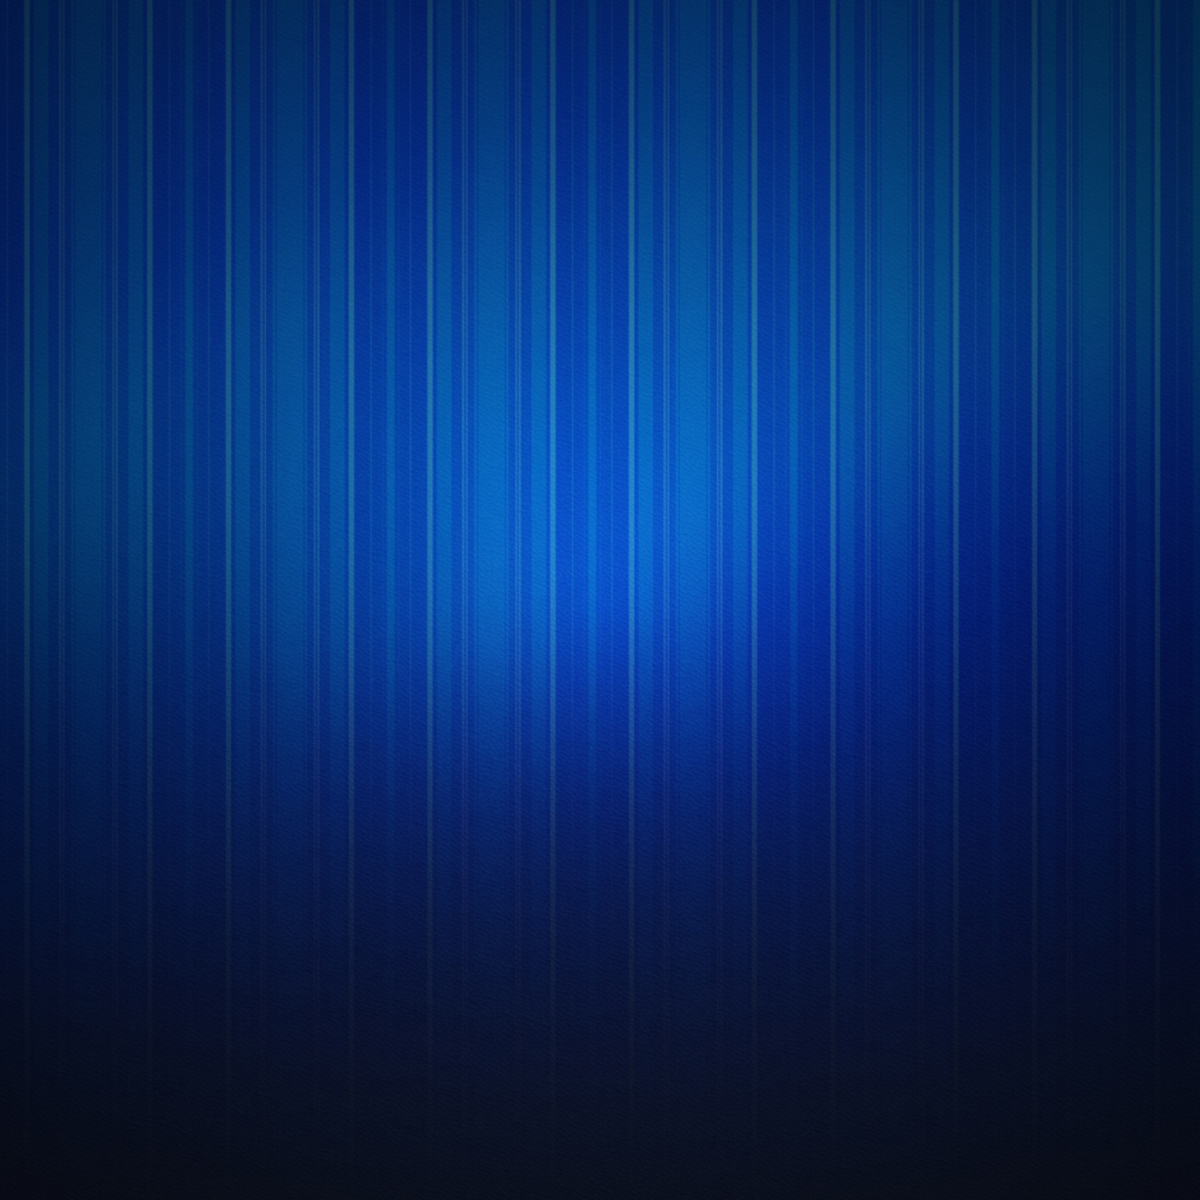 Plain Neon Blue Background Plain blue backgrounds